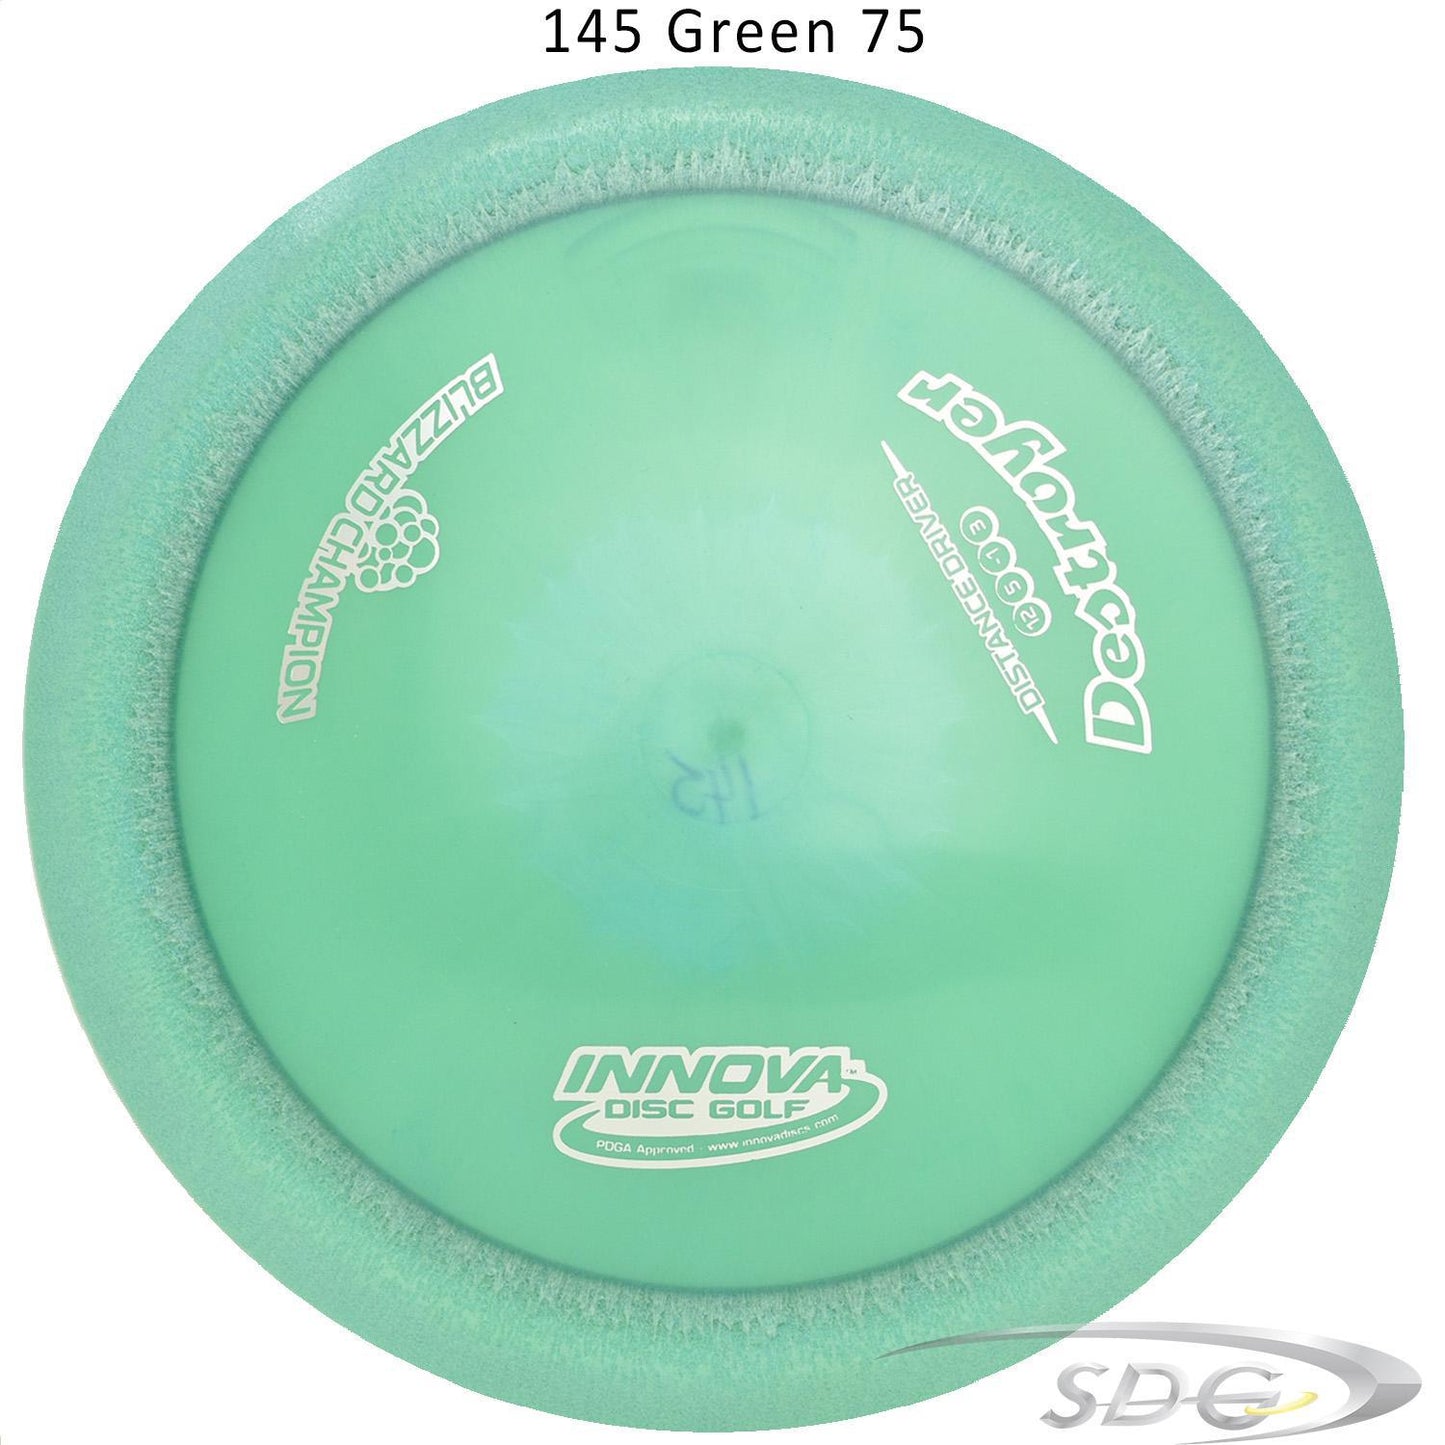 innova-blizzard-champion-destroyer-disc-golf-distance-driver 145 Green 75 